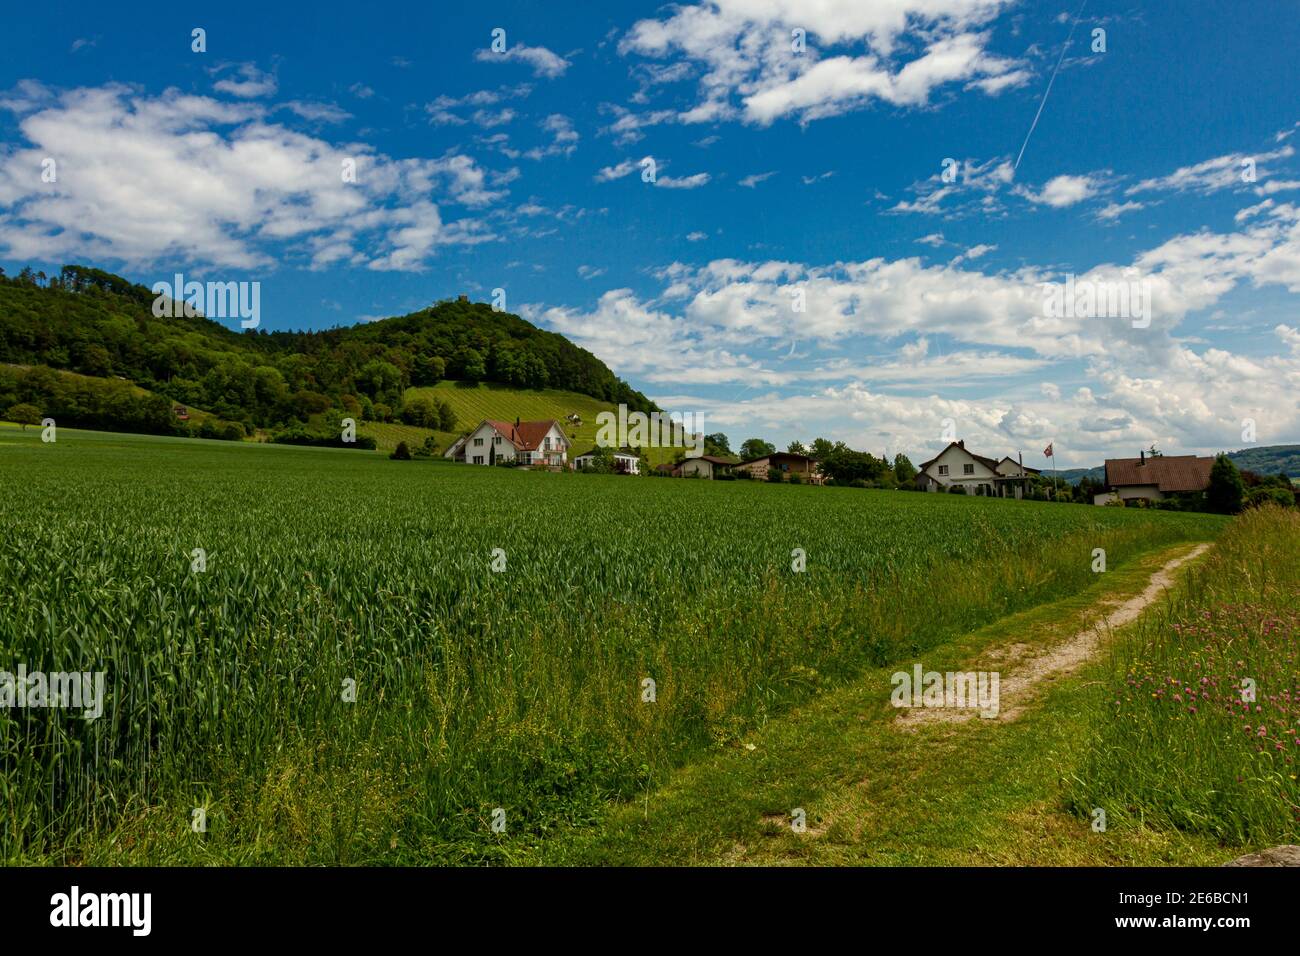 Ein Weizen- oder Gerstenfeld im Zentralplateau der Schweiz. Es gibt eine  unbefestigte Straße durch die wachsenden Pflanzen, die zu einem kleinen  Dorf am Fuße führt Stockfotografie - Alamy